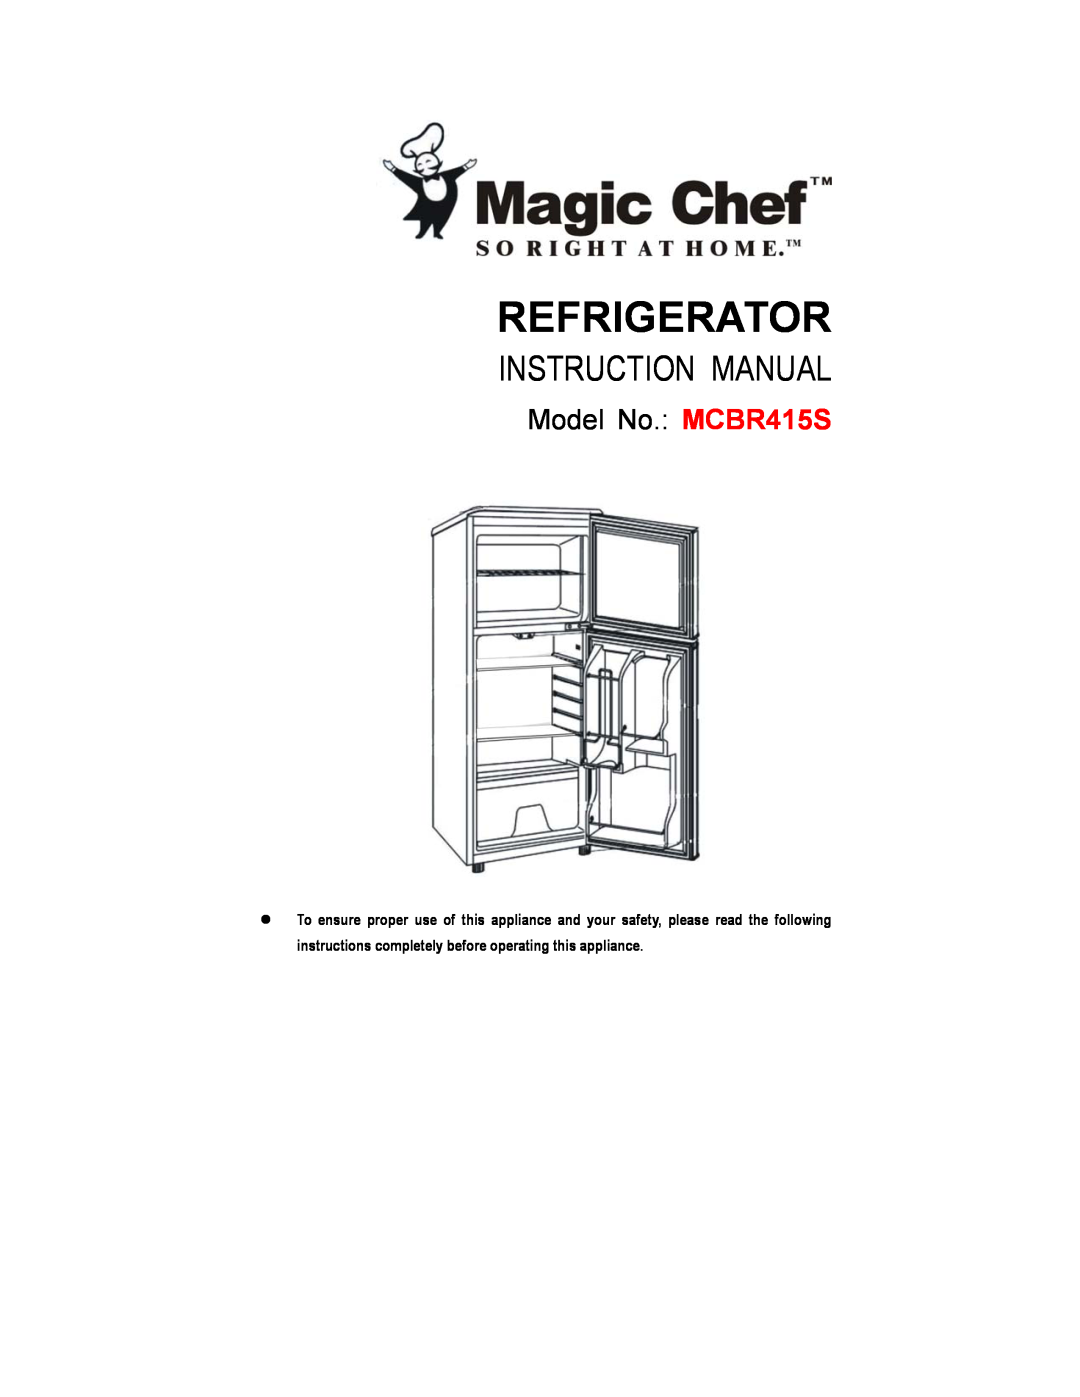 Magic Chef instruction manual Refrigerator, Model No. MCBR415S 